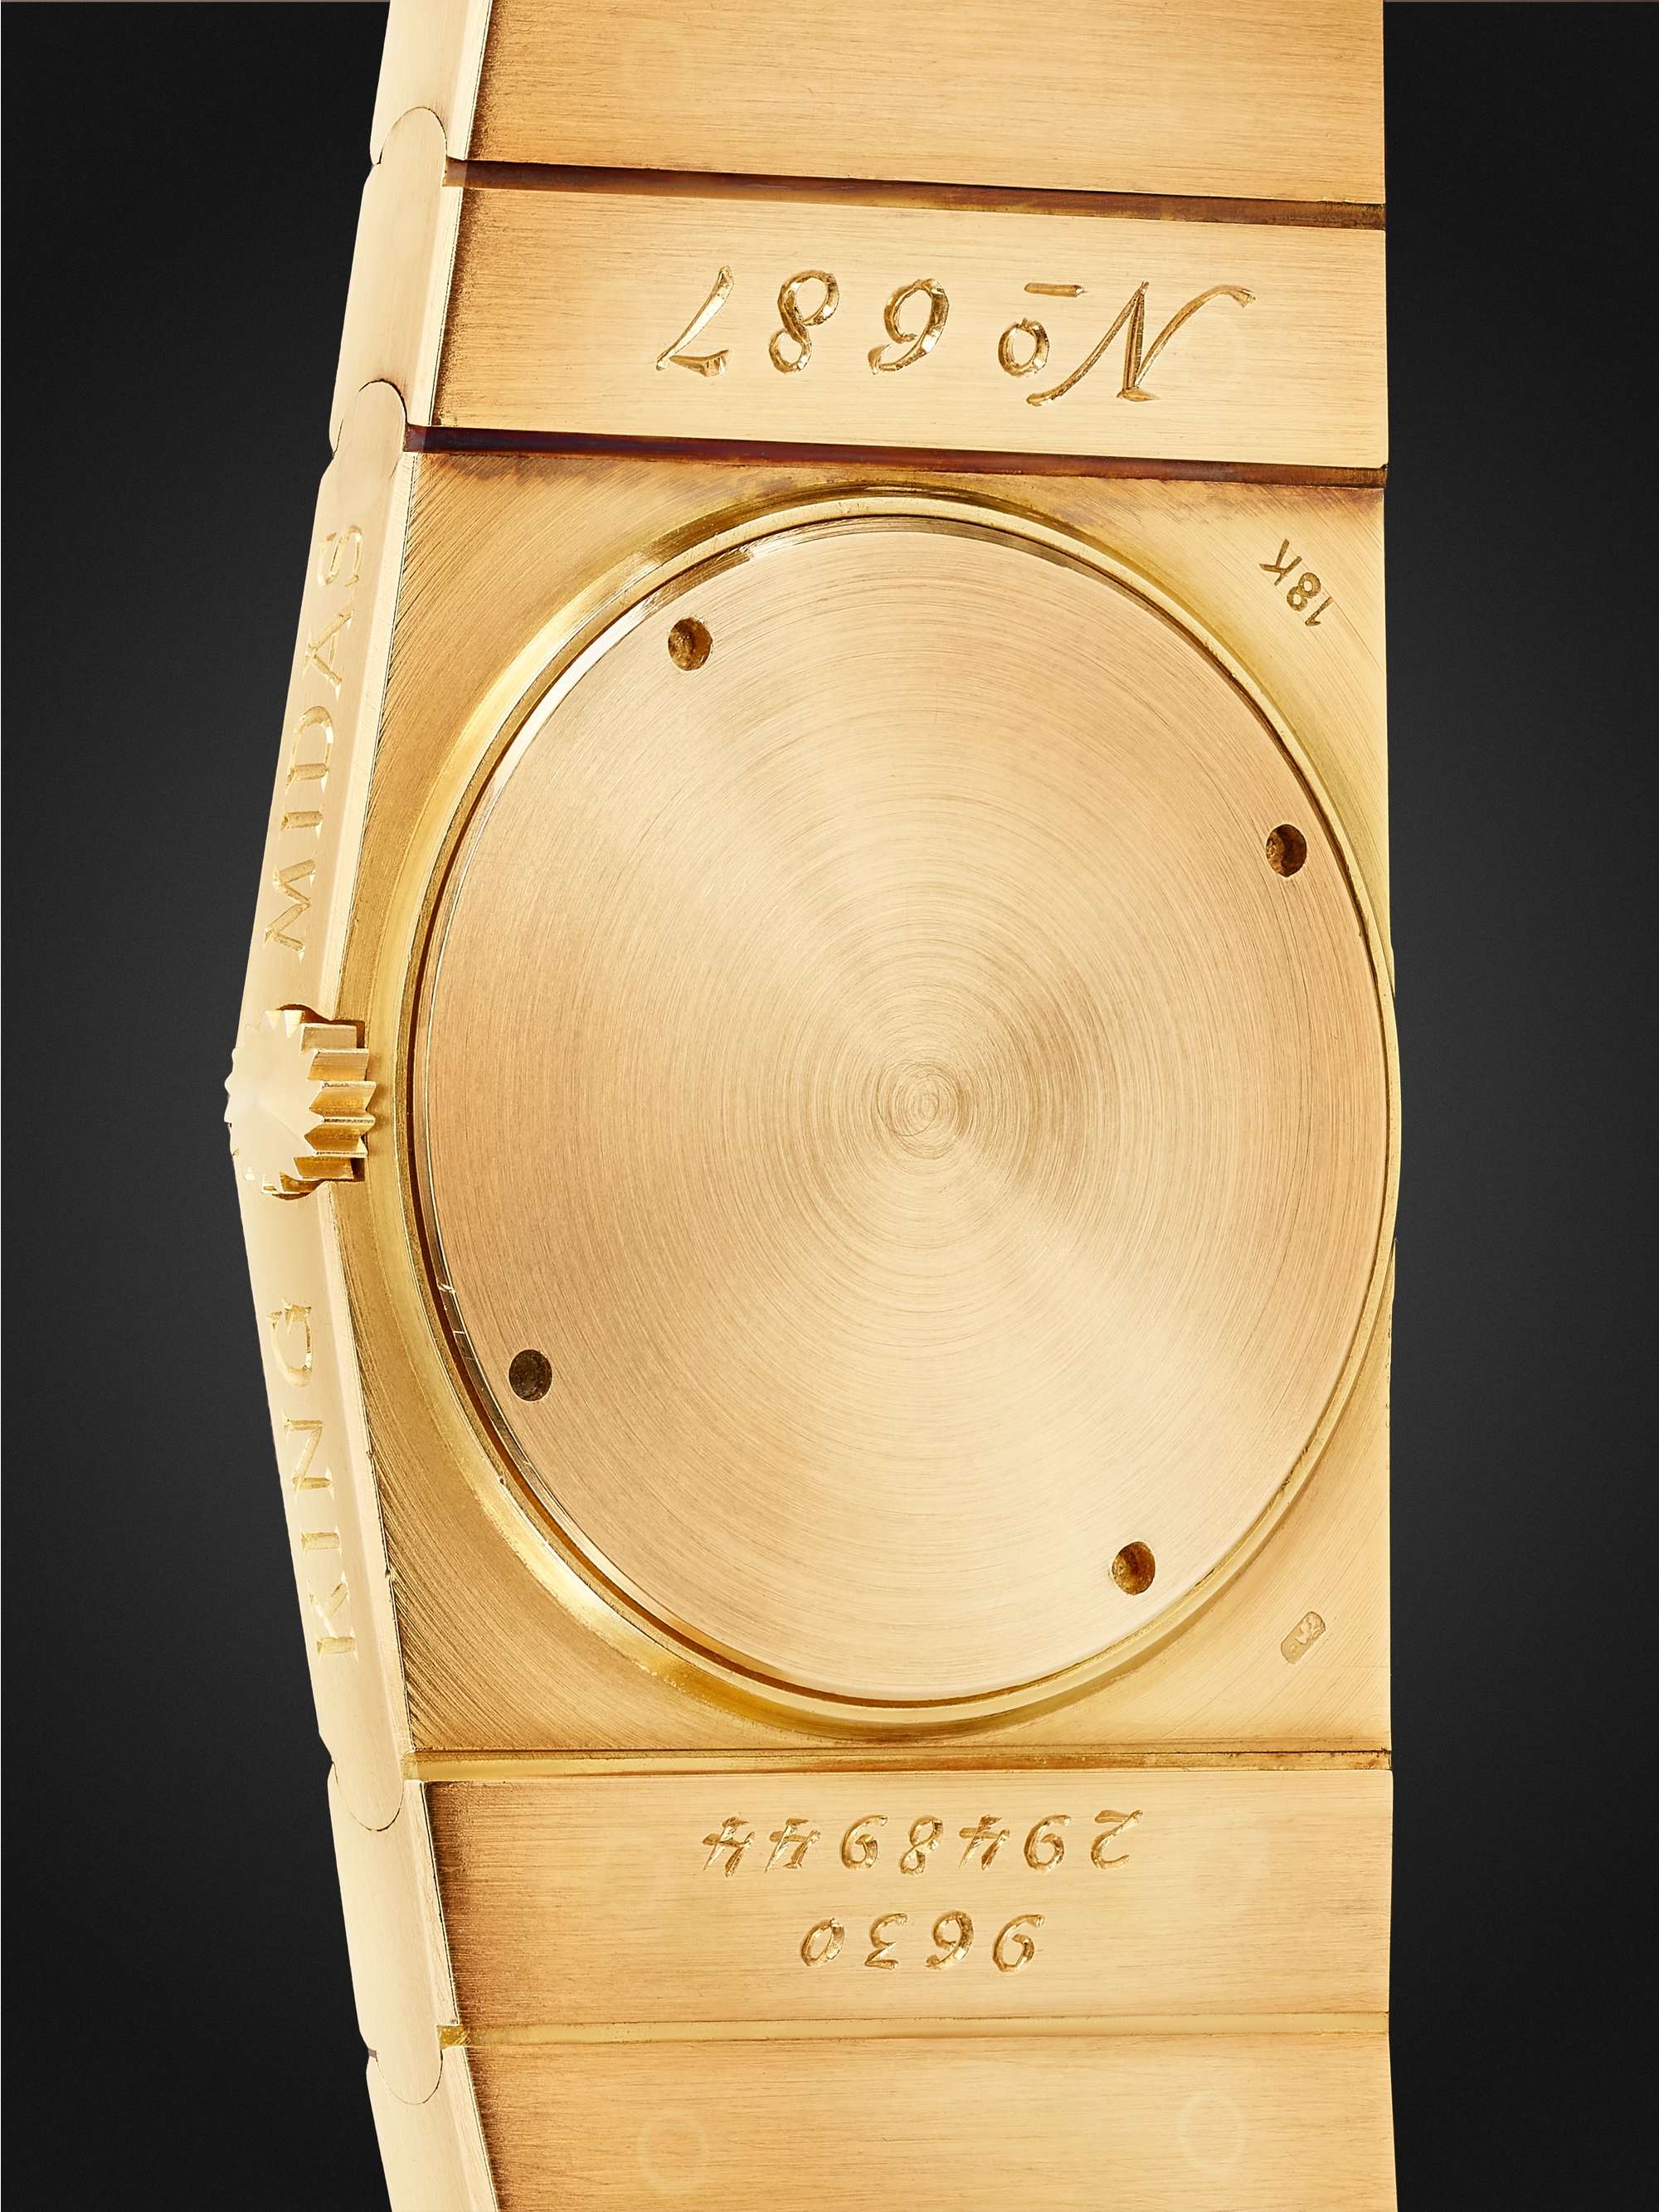 WATCH BROTHERS LONDON ساعة Rolex King Midas المملوكة مسبقاّ ويدوية التعبئة من الستينات من الذهب عيار 18 قيراط، الرقم المرجعي 9630